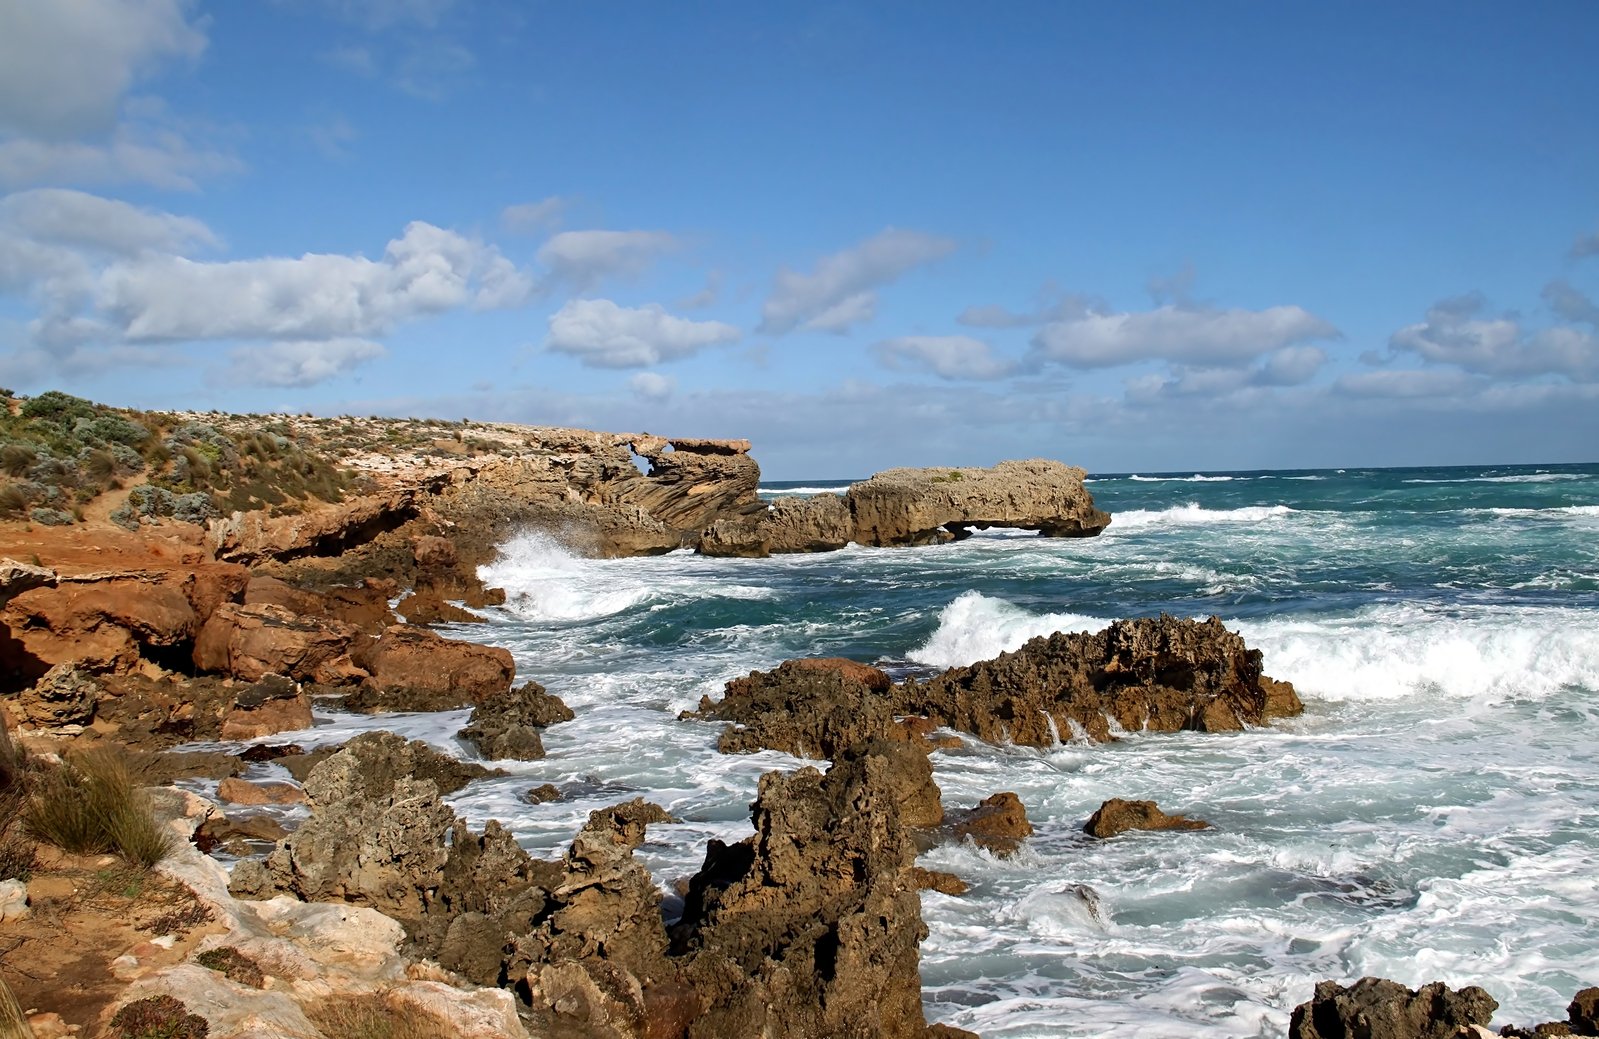 rocky coastline with ocean crashing into rocks